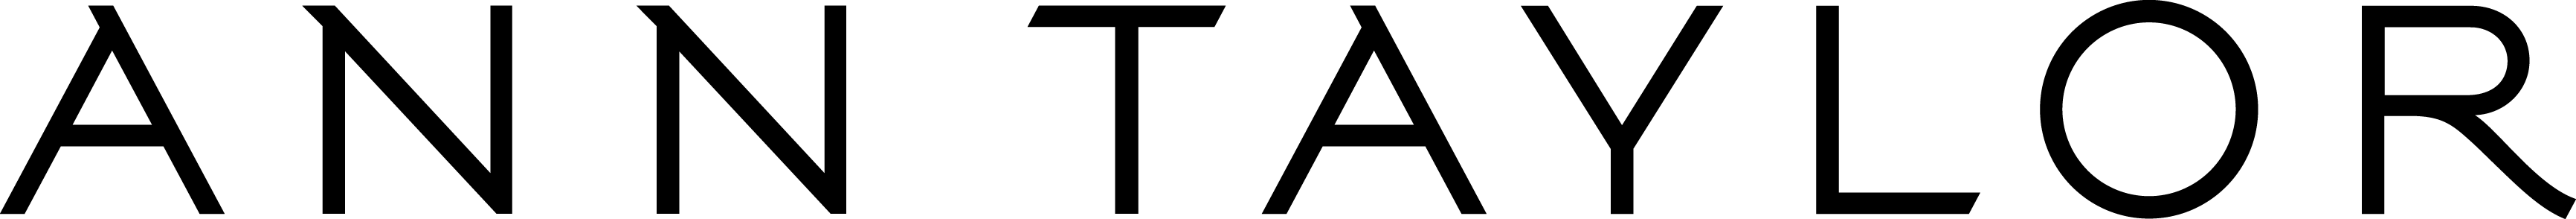 Logo - Genworth Financial (3464x294)